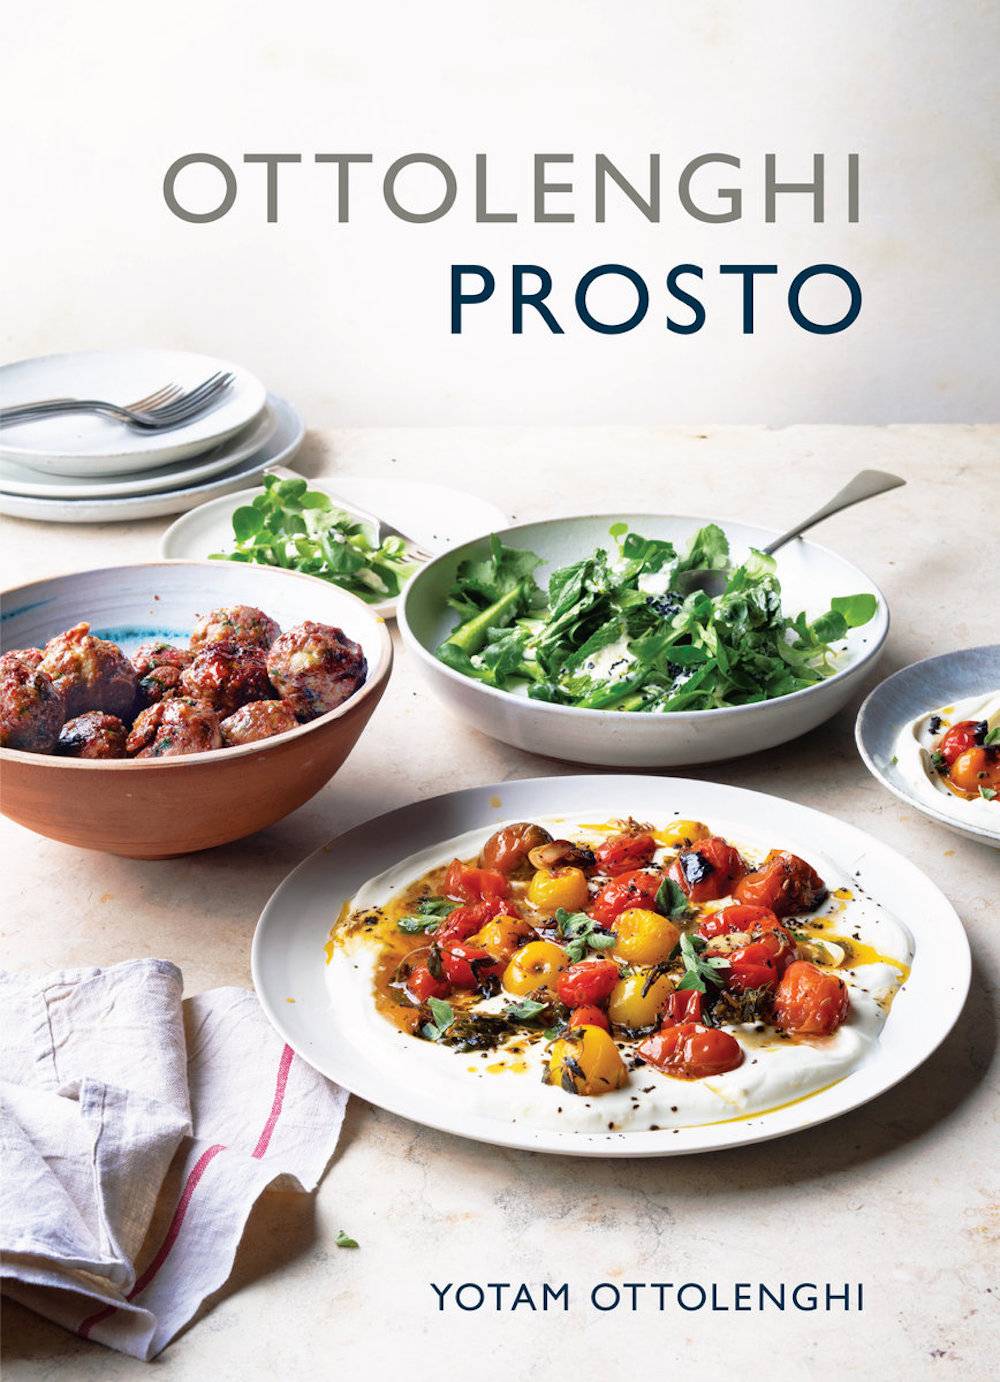 Książka kucharska „Prosto” Yotama Ottolenghiego, cena: 55 zł (Fot. materiały prasowe)